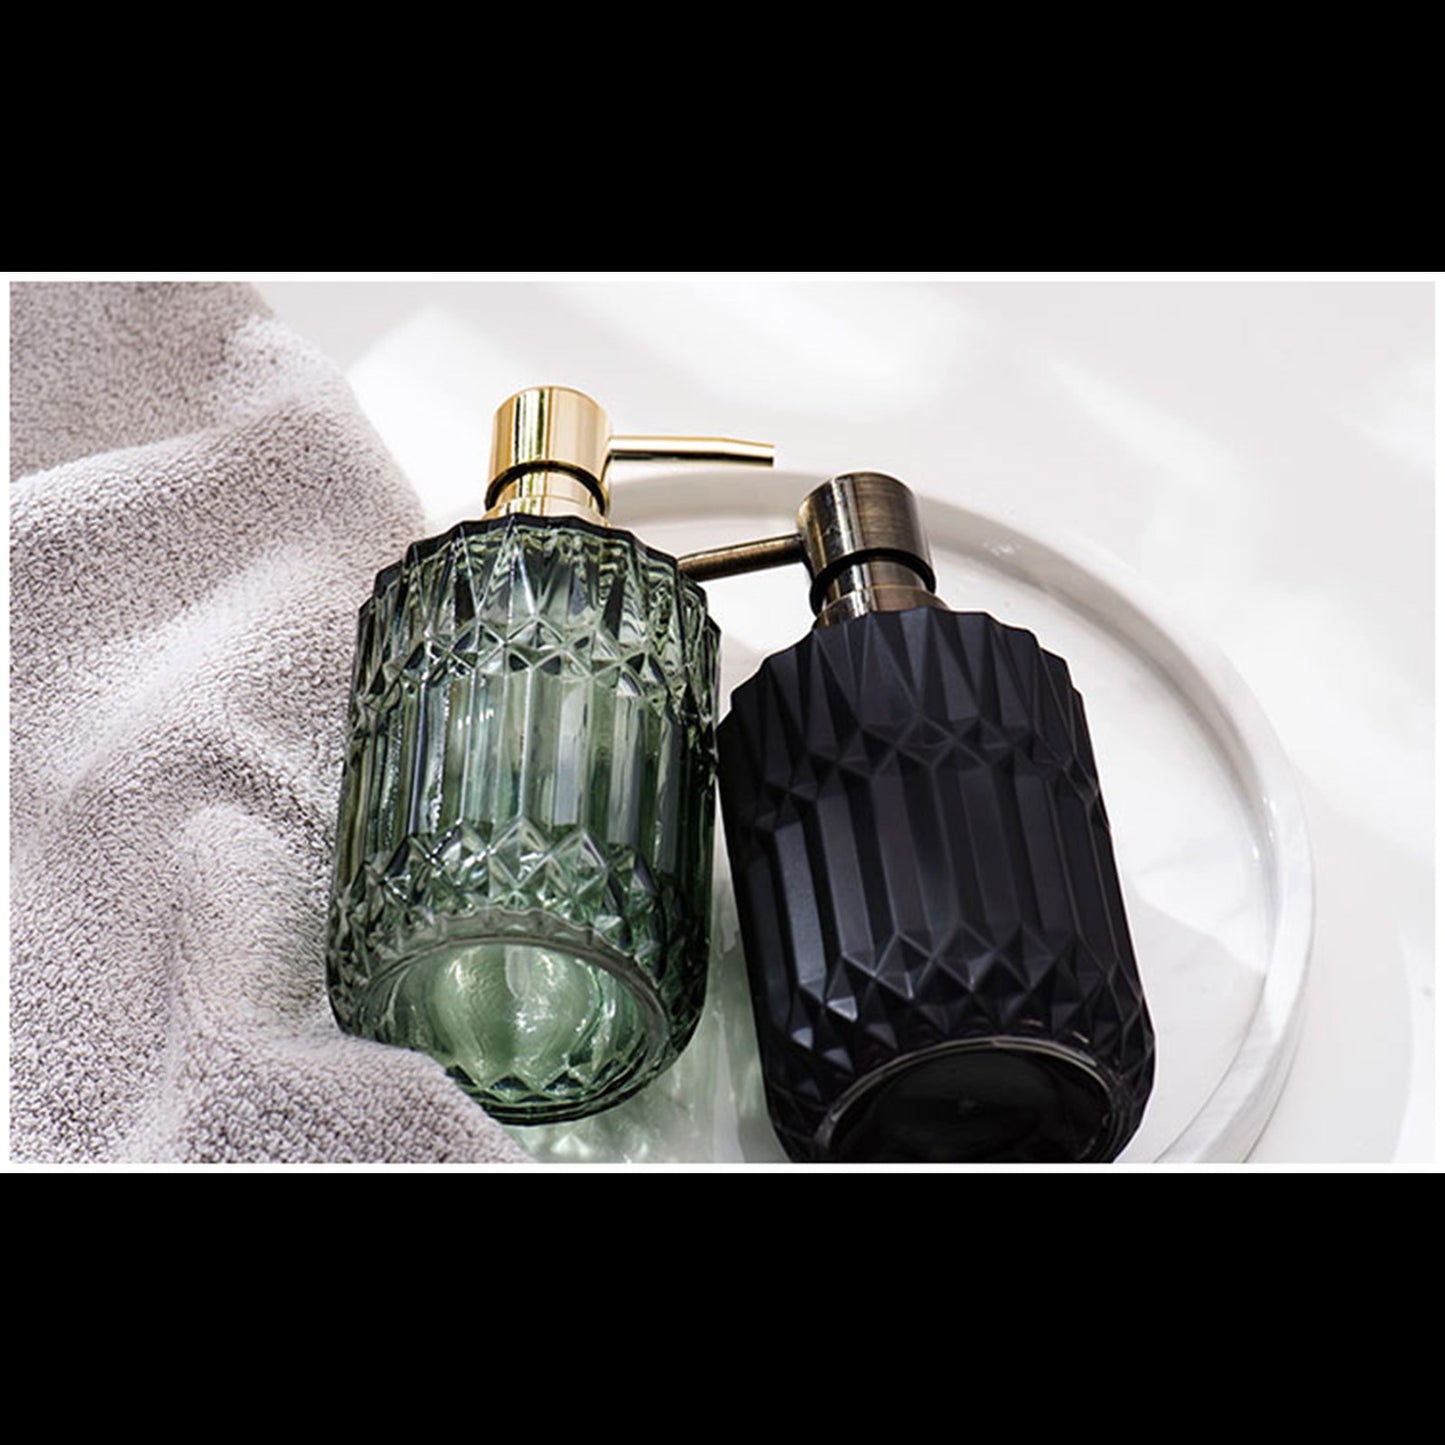 Liquid Shampoo Soap Dispenser Hand Pump Bottle Green Black Gary - Pantsnsox